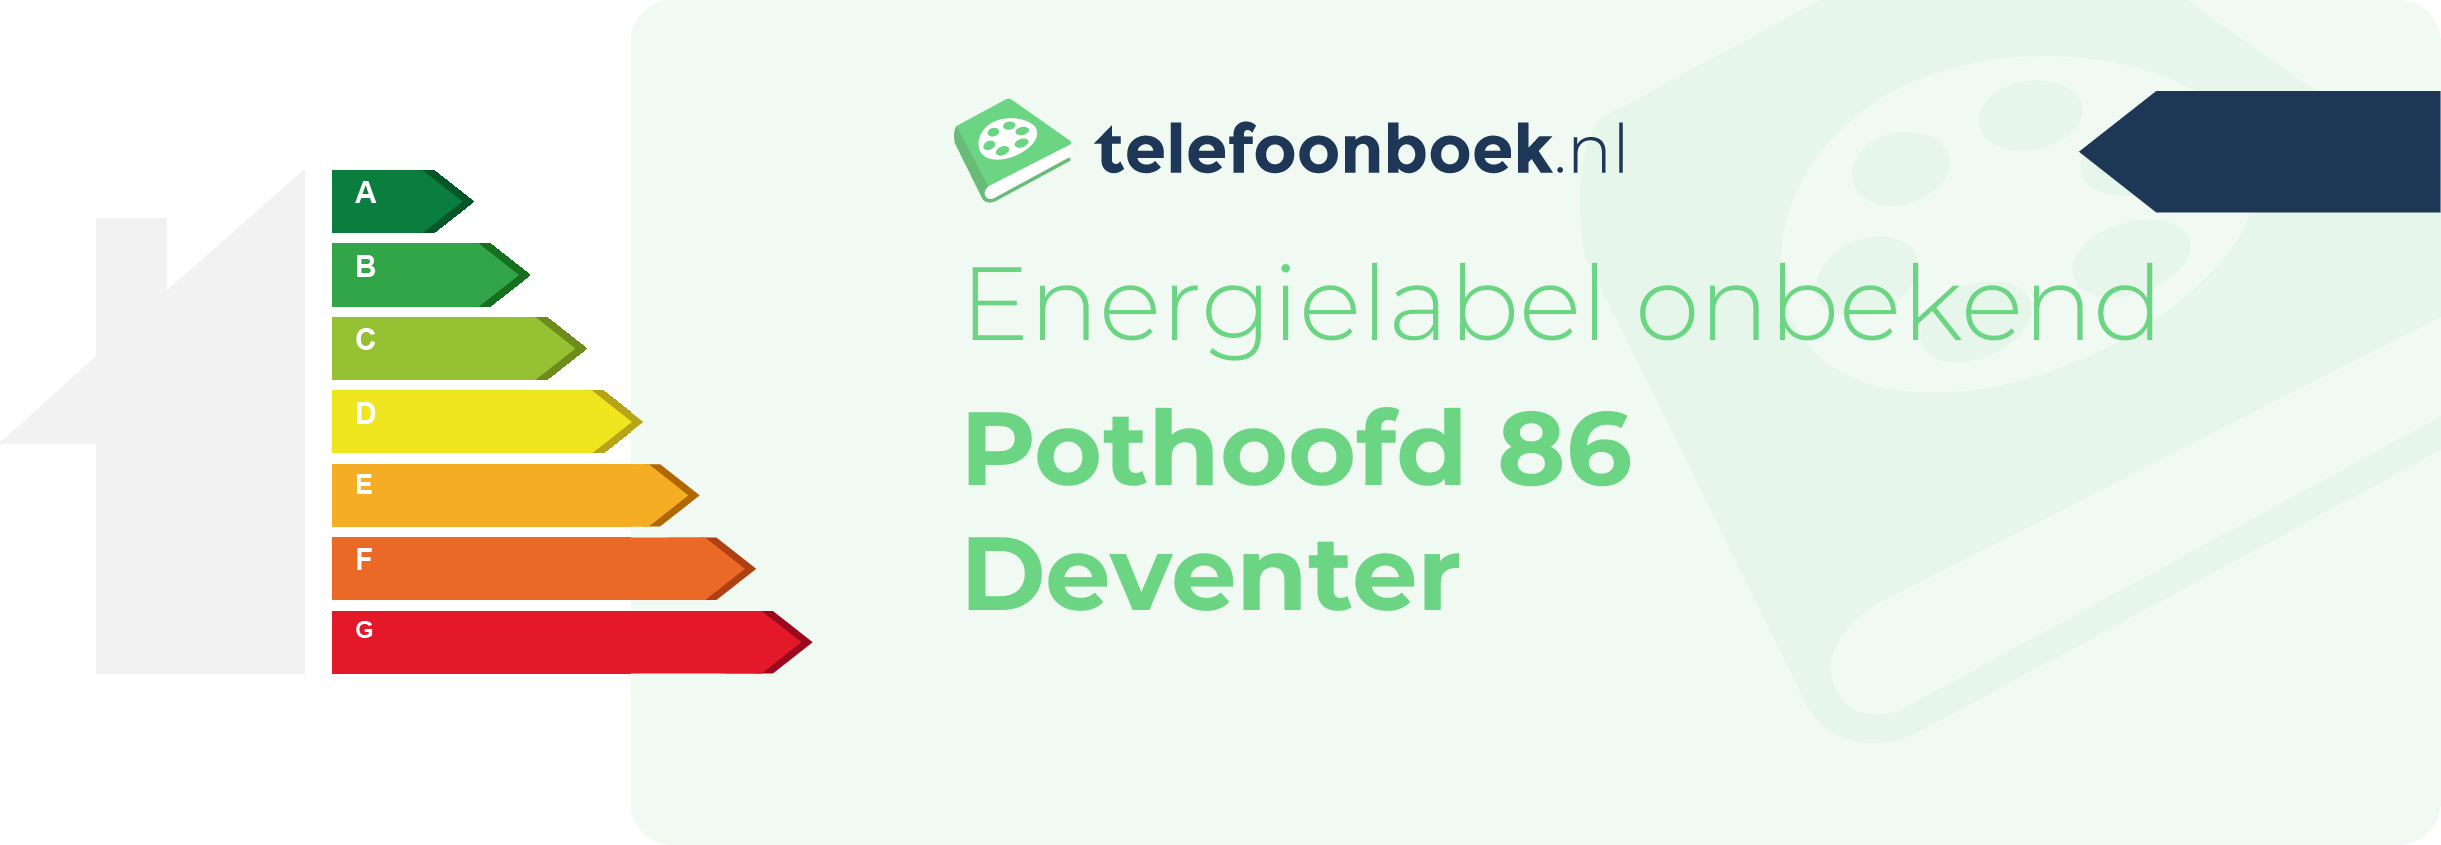 Energielabel Pothoofd 86 Deventer